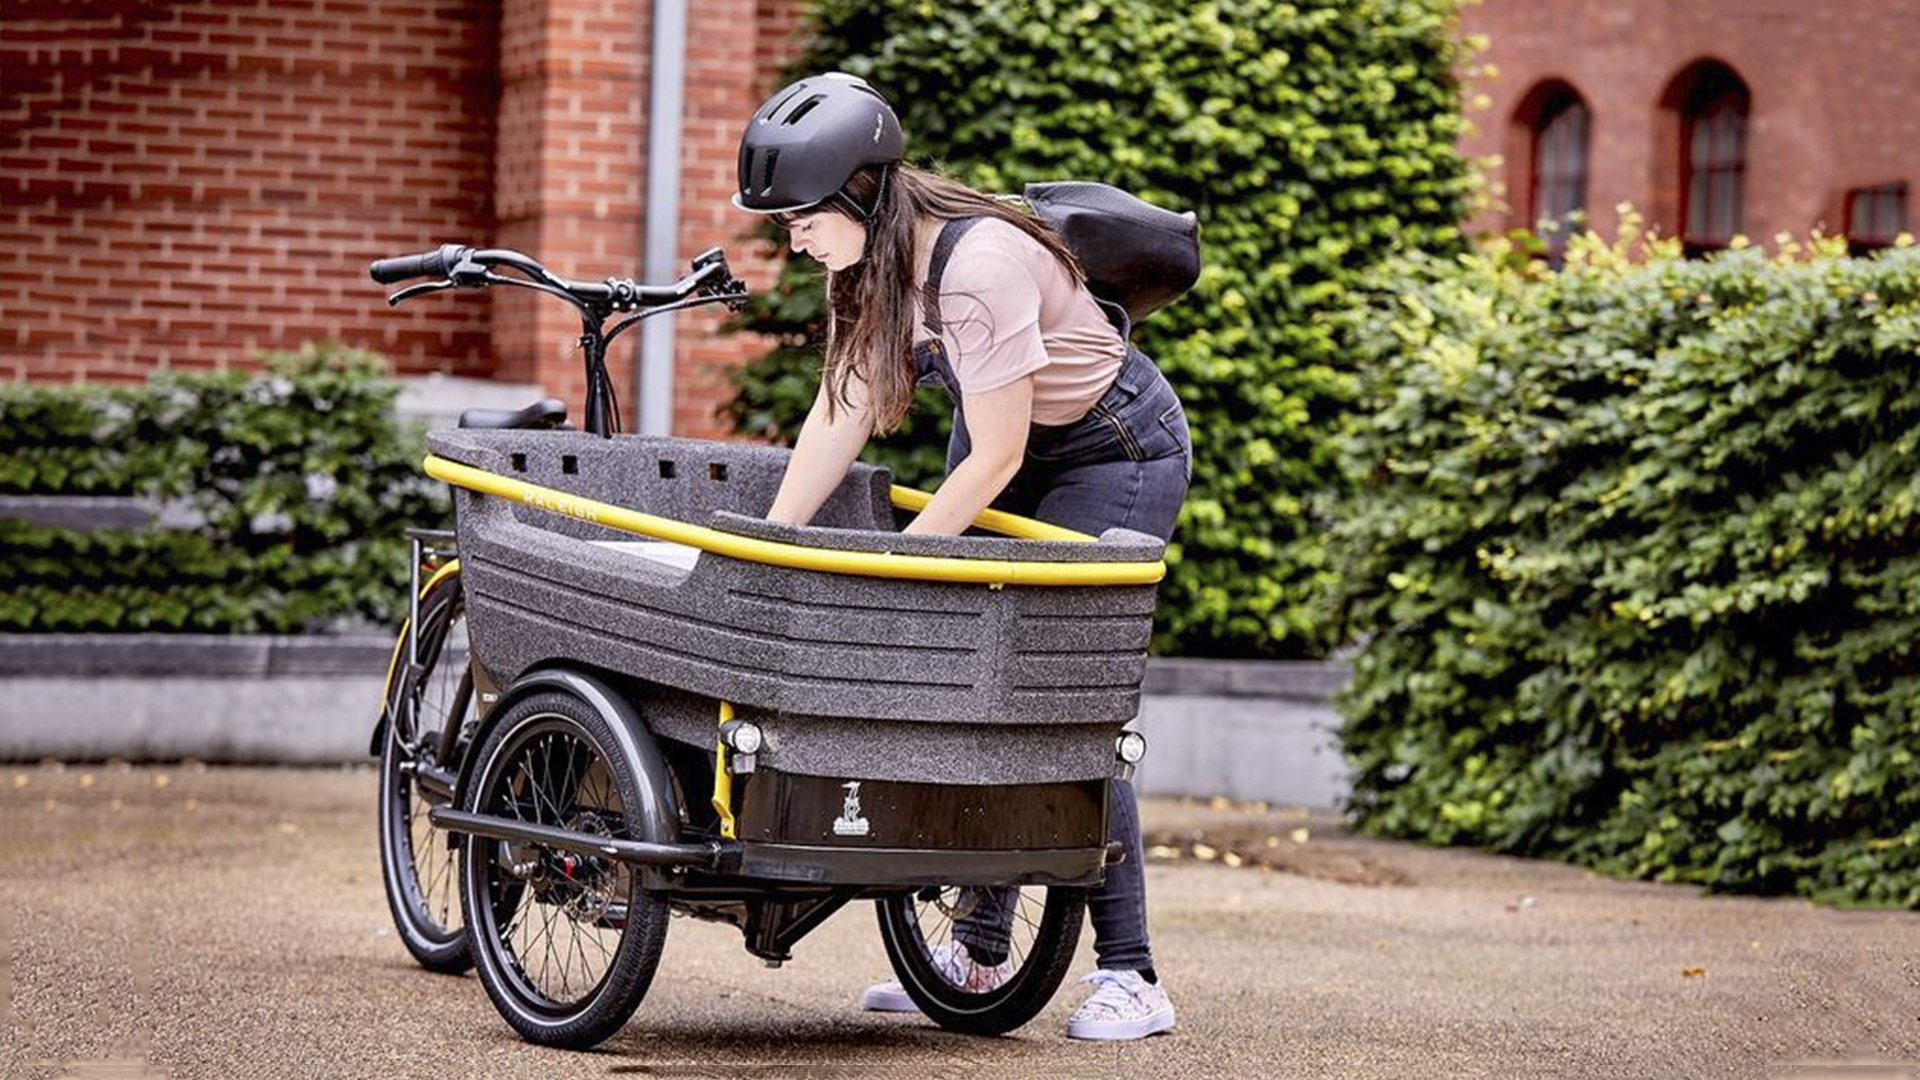 Empresa revela Triciclo Elétrico capaz de levar 5 pessoas com uma autonomia de até 65 km